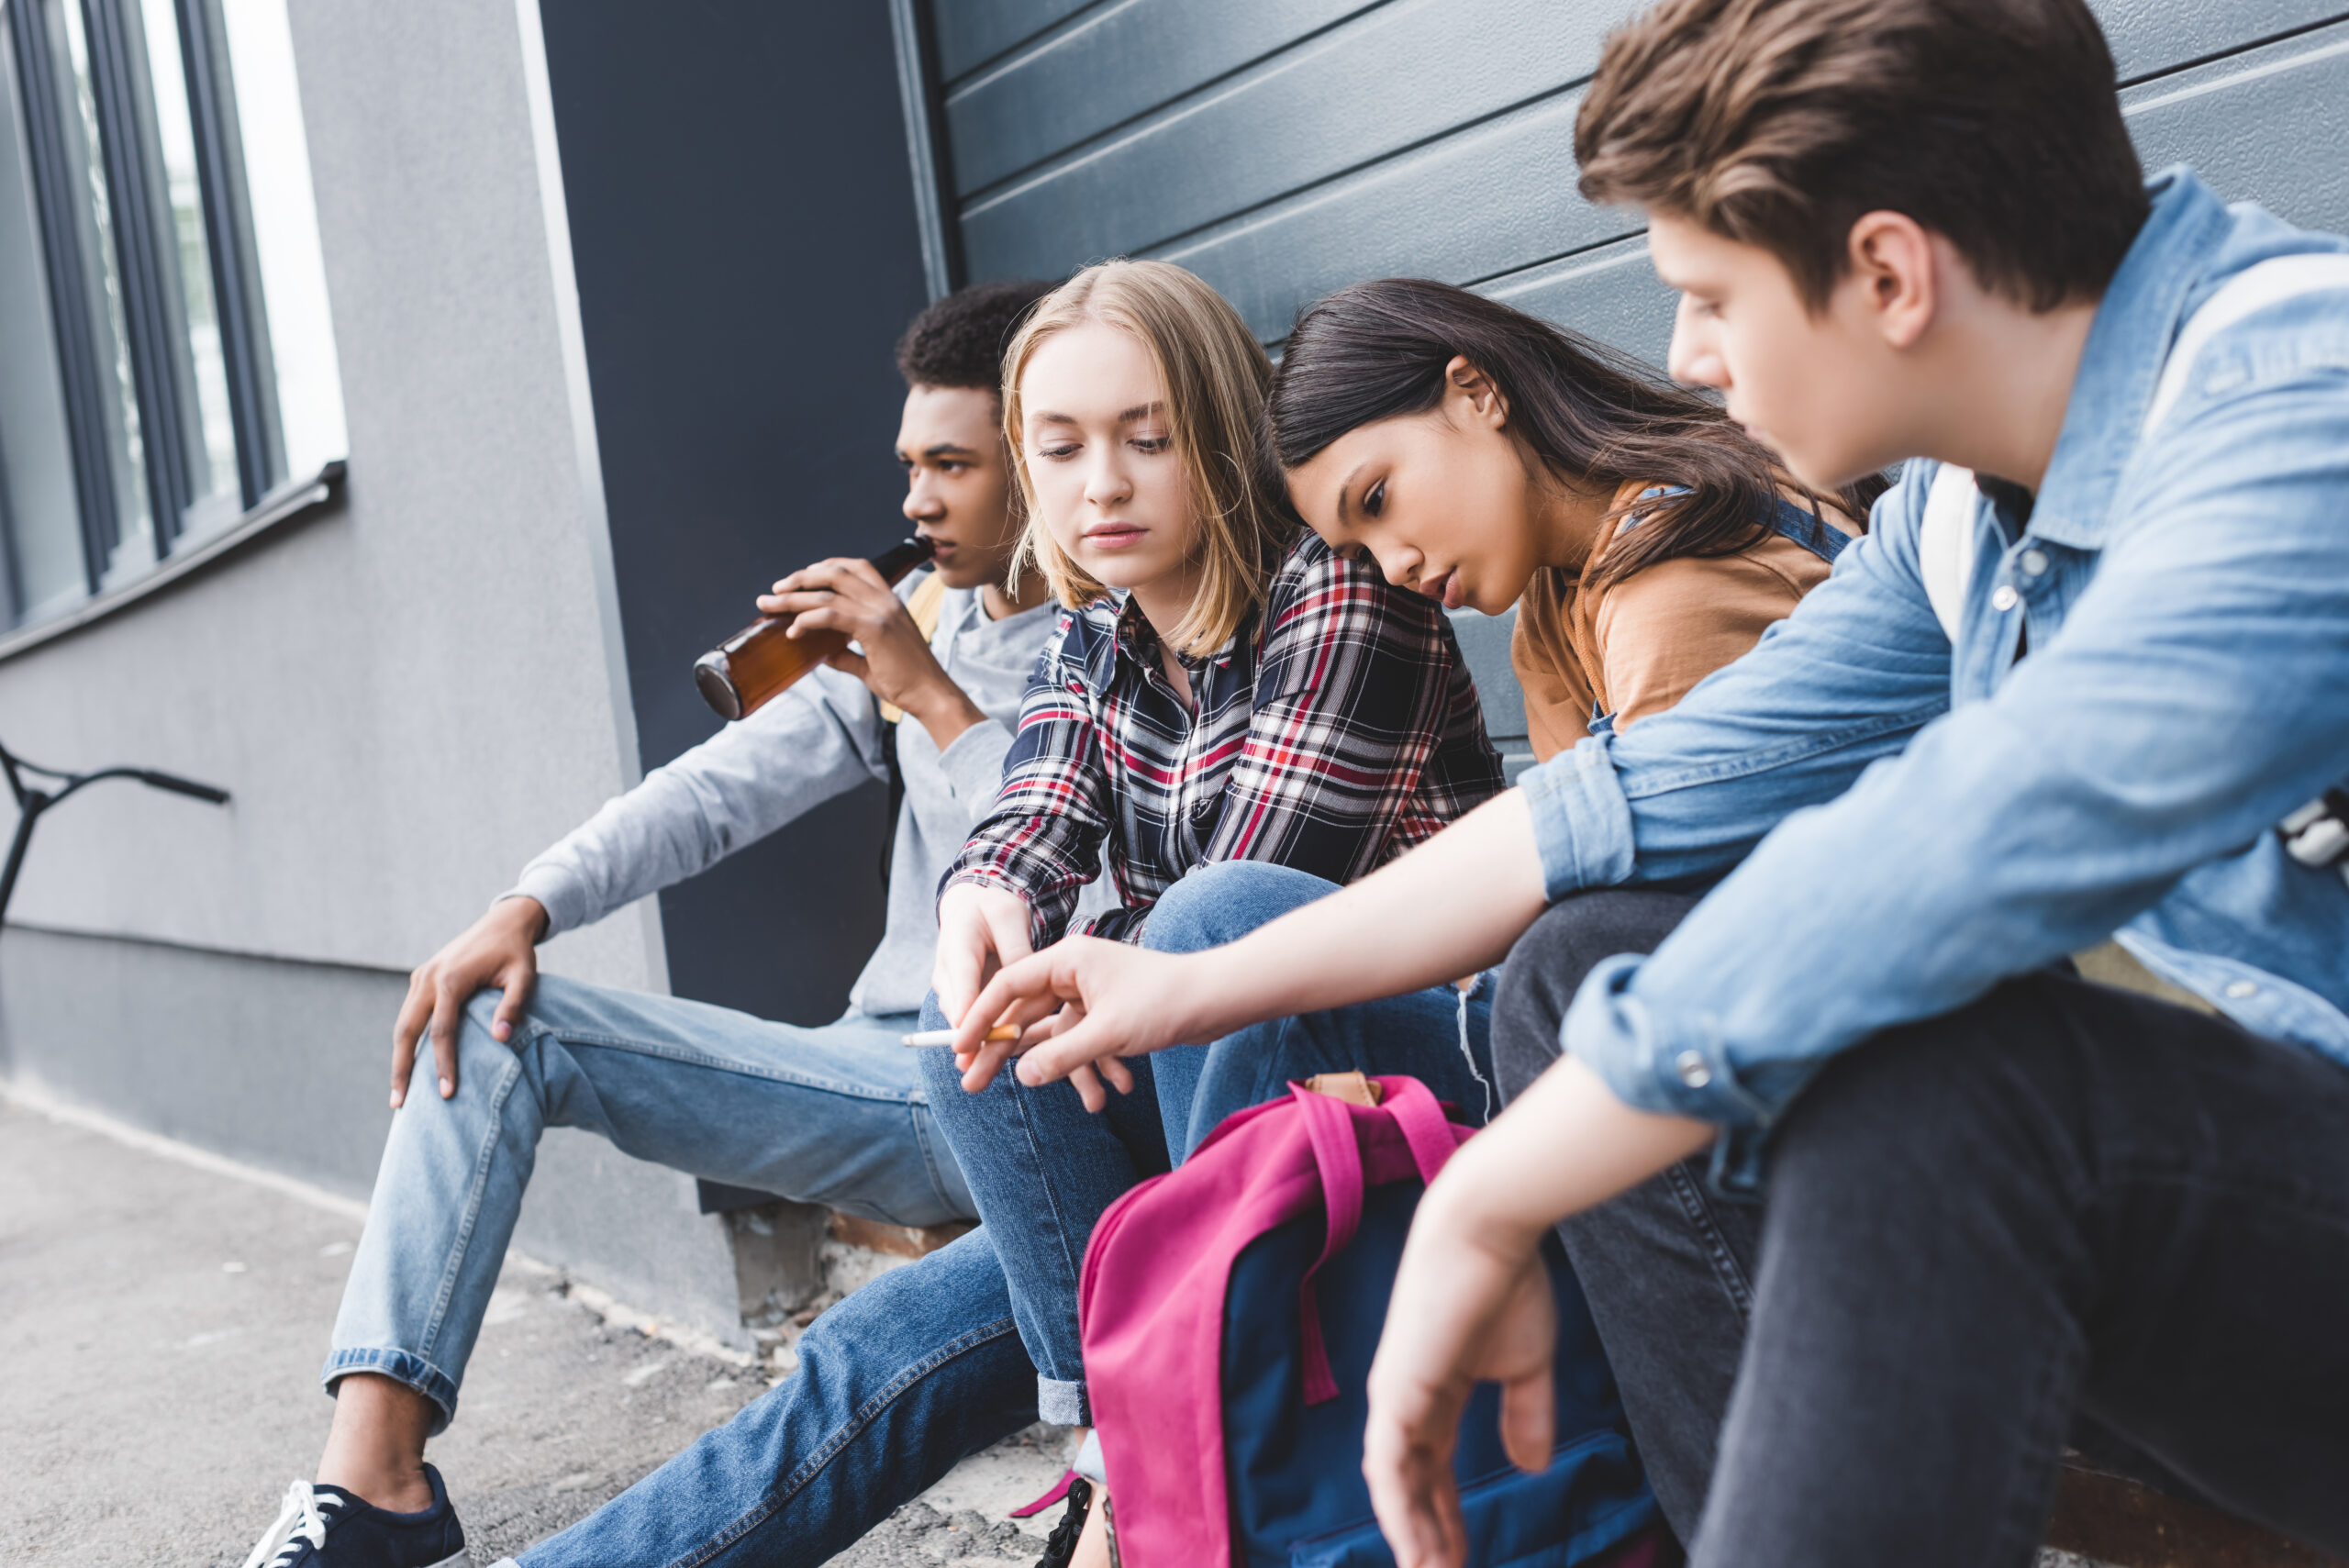 Anstieg der Suchthilfe-Anfragen von Jugendlichen: Nikotin im Fokus